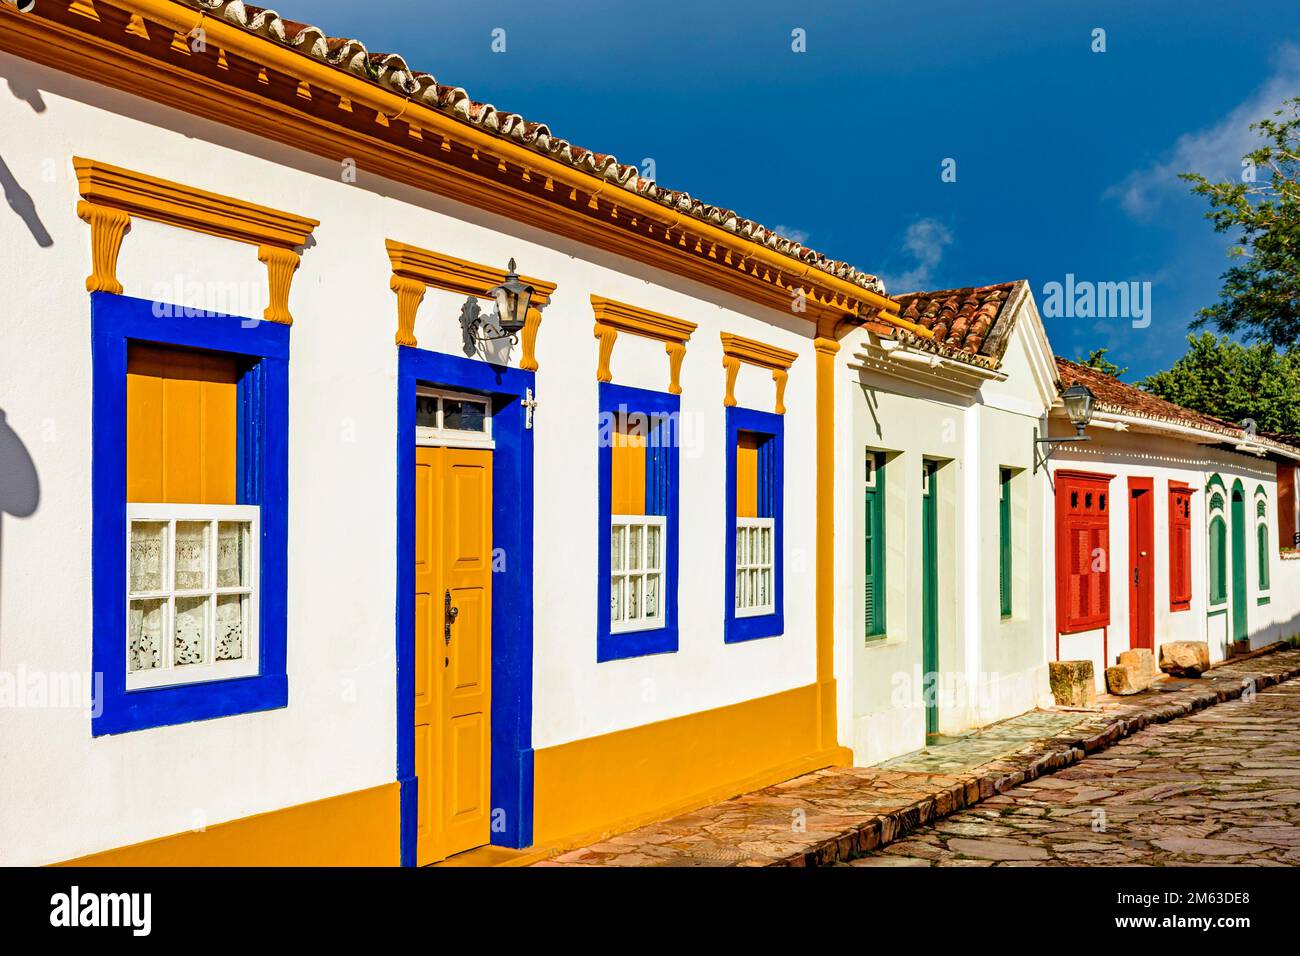 Rue pavée avec maisons de style colonial dans la ville de Tiradentes, Minas Gerais. Banque D'Images